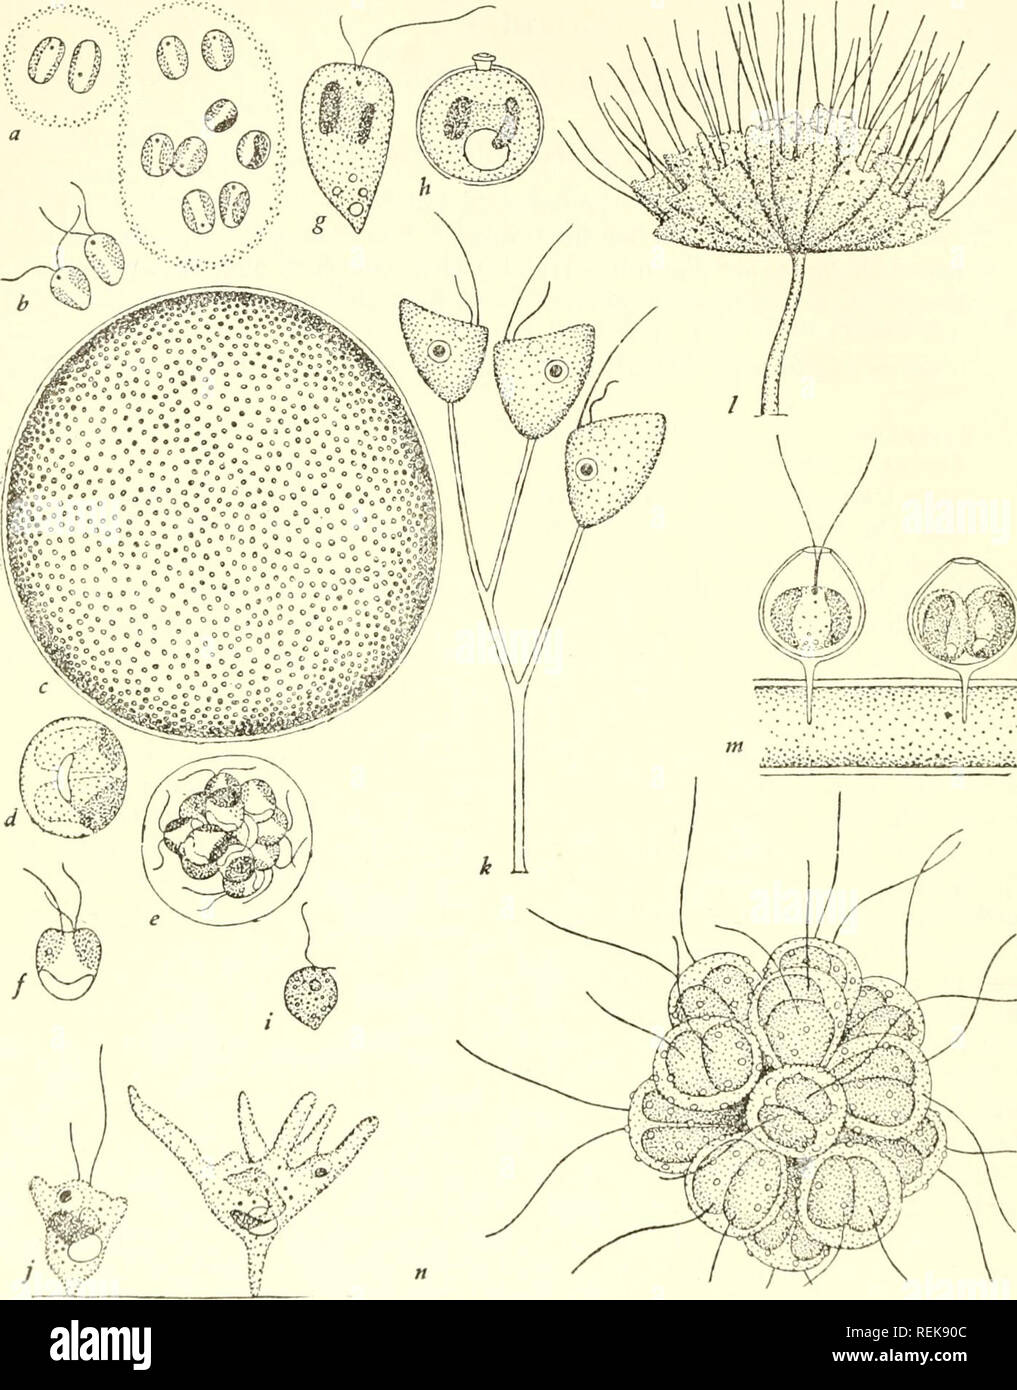 . La classification des organismes inférieurs. La biologie. 54] La classification des organismes inférieurs. Fig. 8.-Ochromonadalea : a, b, Chrysocapsa paludosa après West (1904) ; un, une colonie ; b, les zoospores. C-f, Phaeocystis globosa après l'ScherlTel (1900) ; c, une colonie X 50 ; d, une cellule avec deux plastes, formant une masse d'leucosin sur un monticule de proto- plasma germinatif se projetant dans la vacuole centrale ; e, la production de zoospores ; f, une zoospore. g, h. Cellule et statospore de Ochromonas granularis après Doflein (1922). i, cellule de Monas sp. j. Deux Brehmiella Chrysohydra de cellules après Pascher (1928). k, un très jeune colonie de Banque D'Images